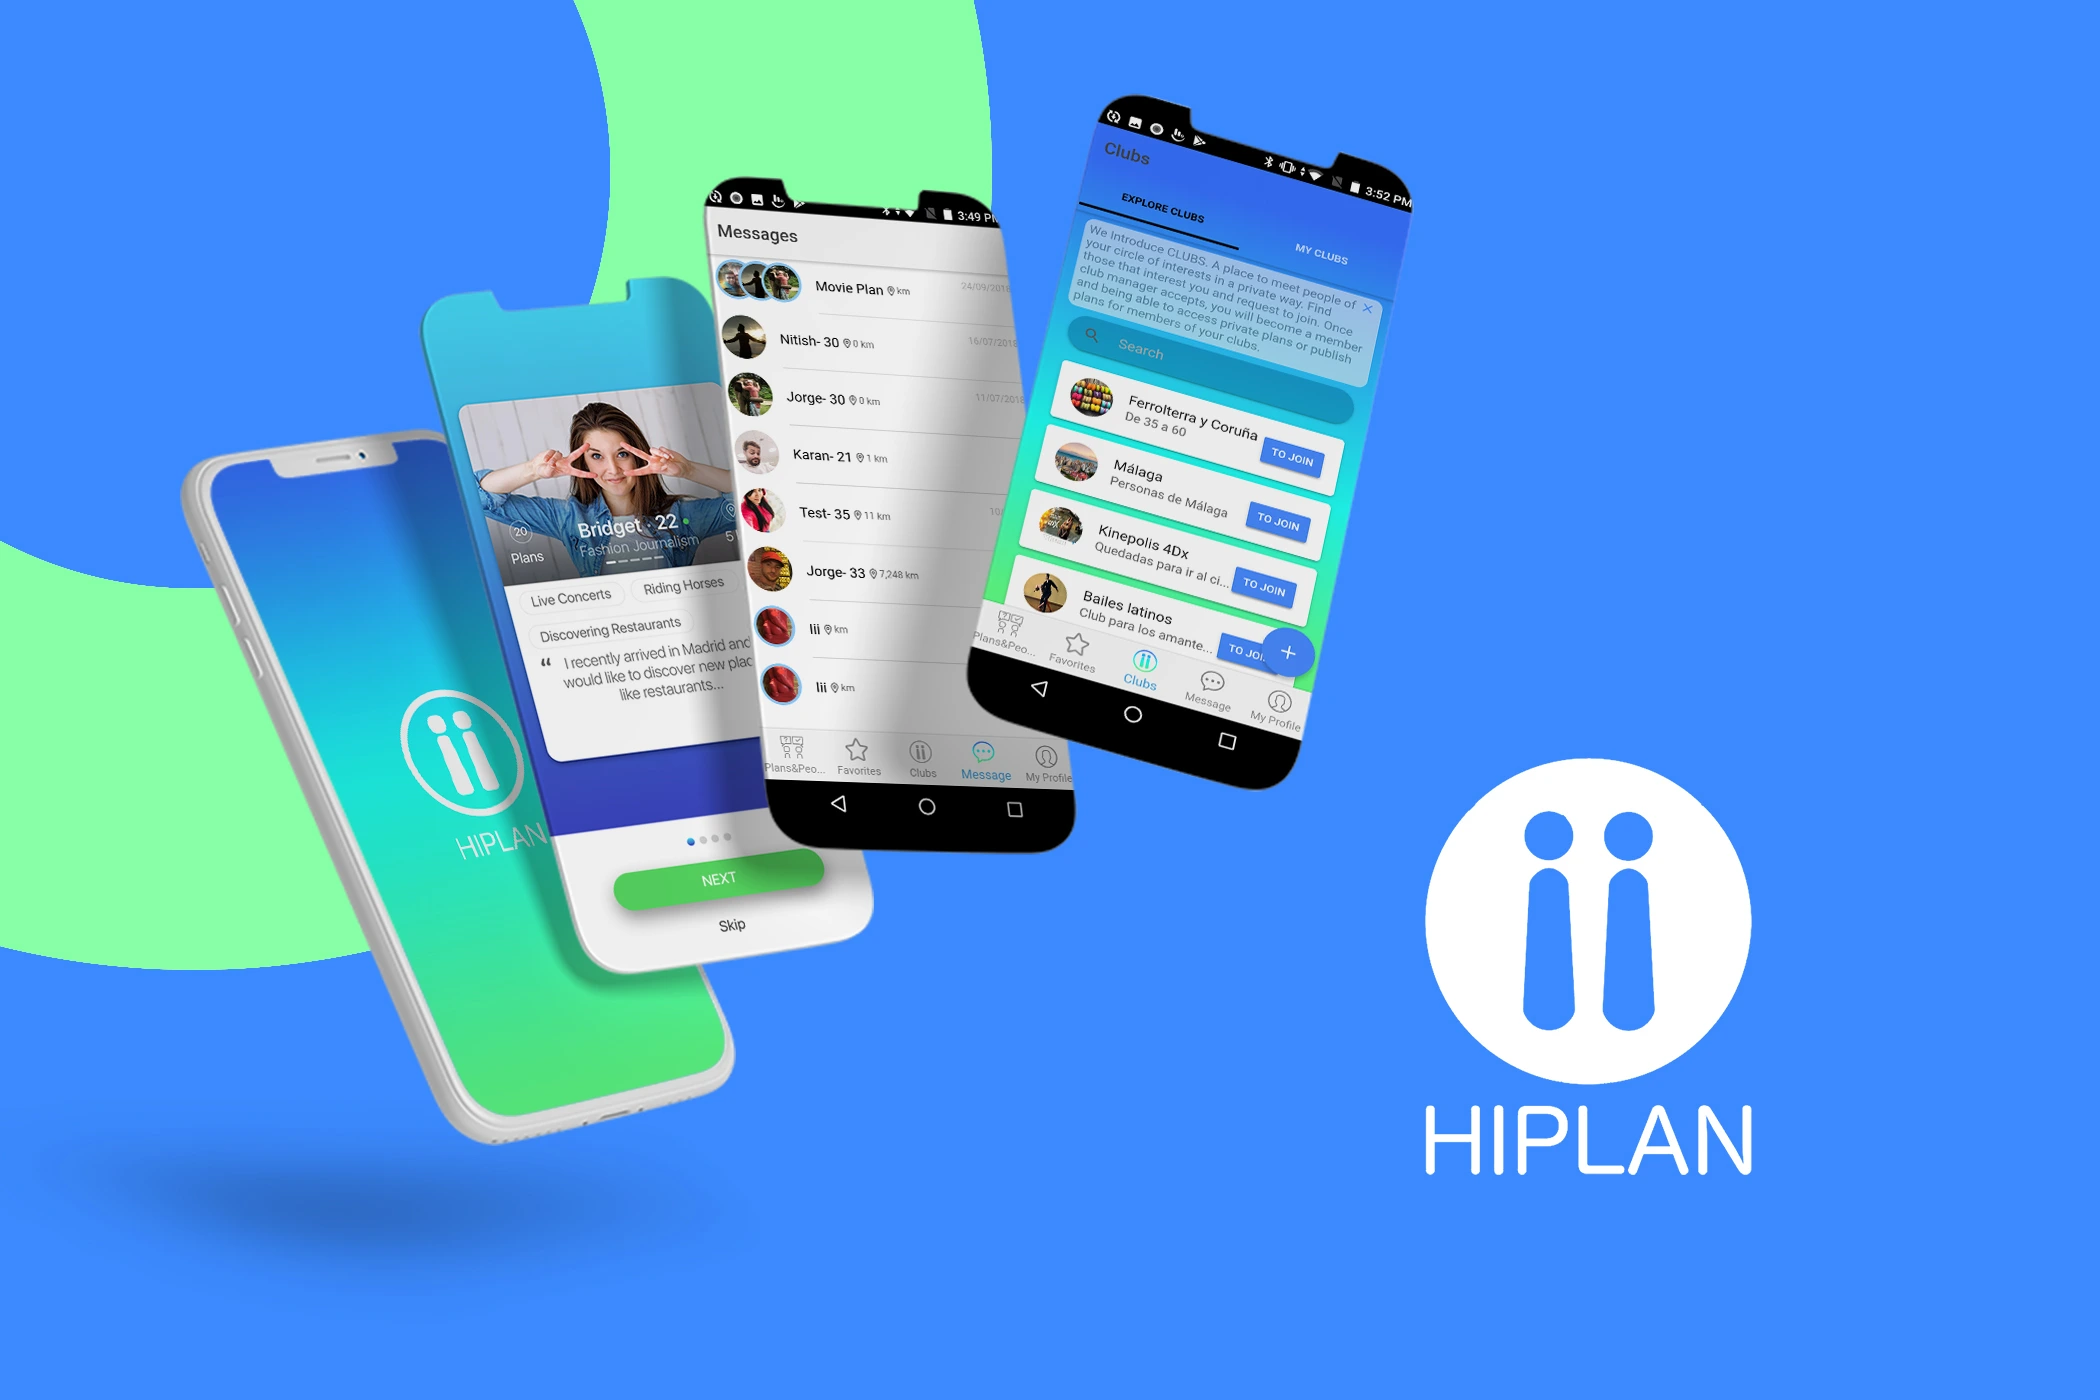 HIPLAN (Social Media App)